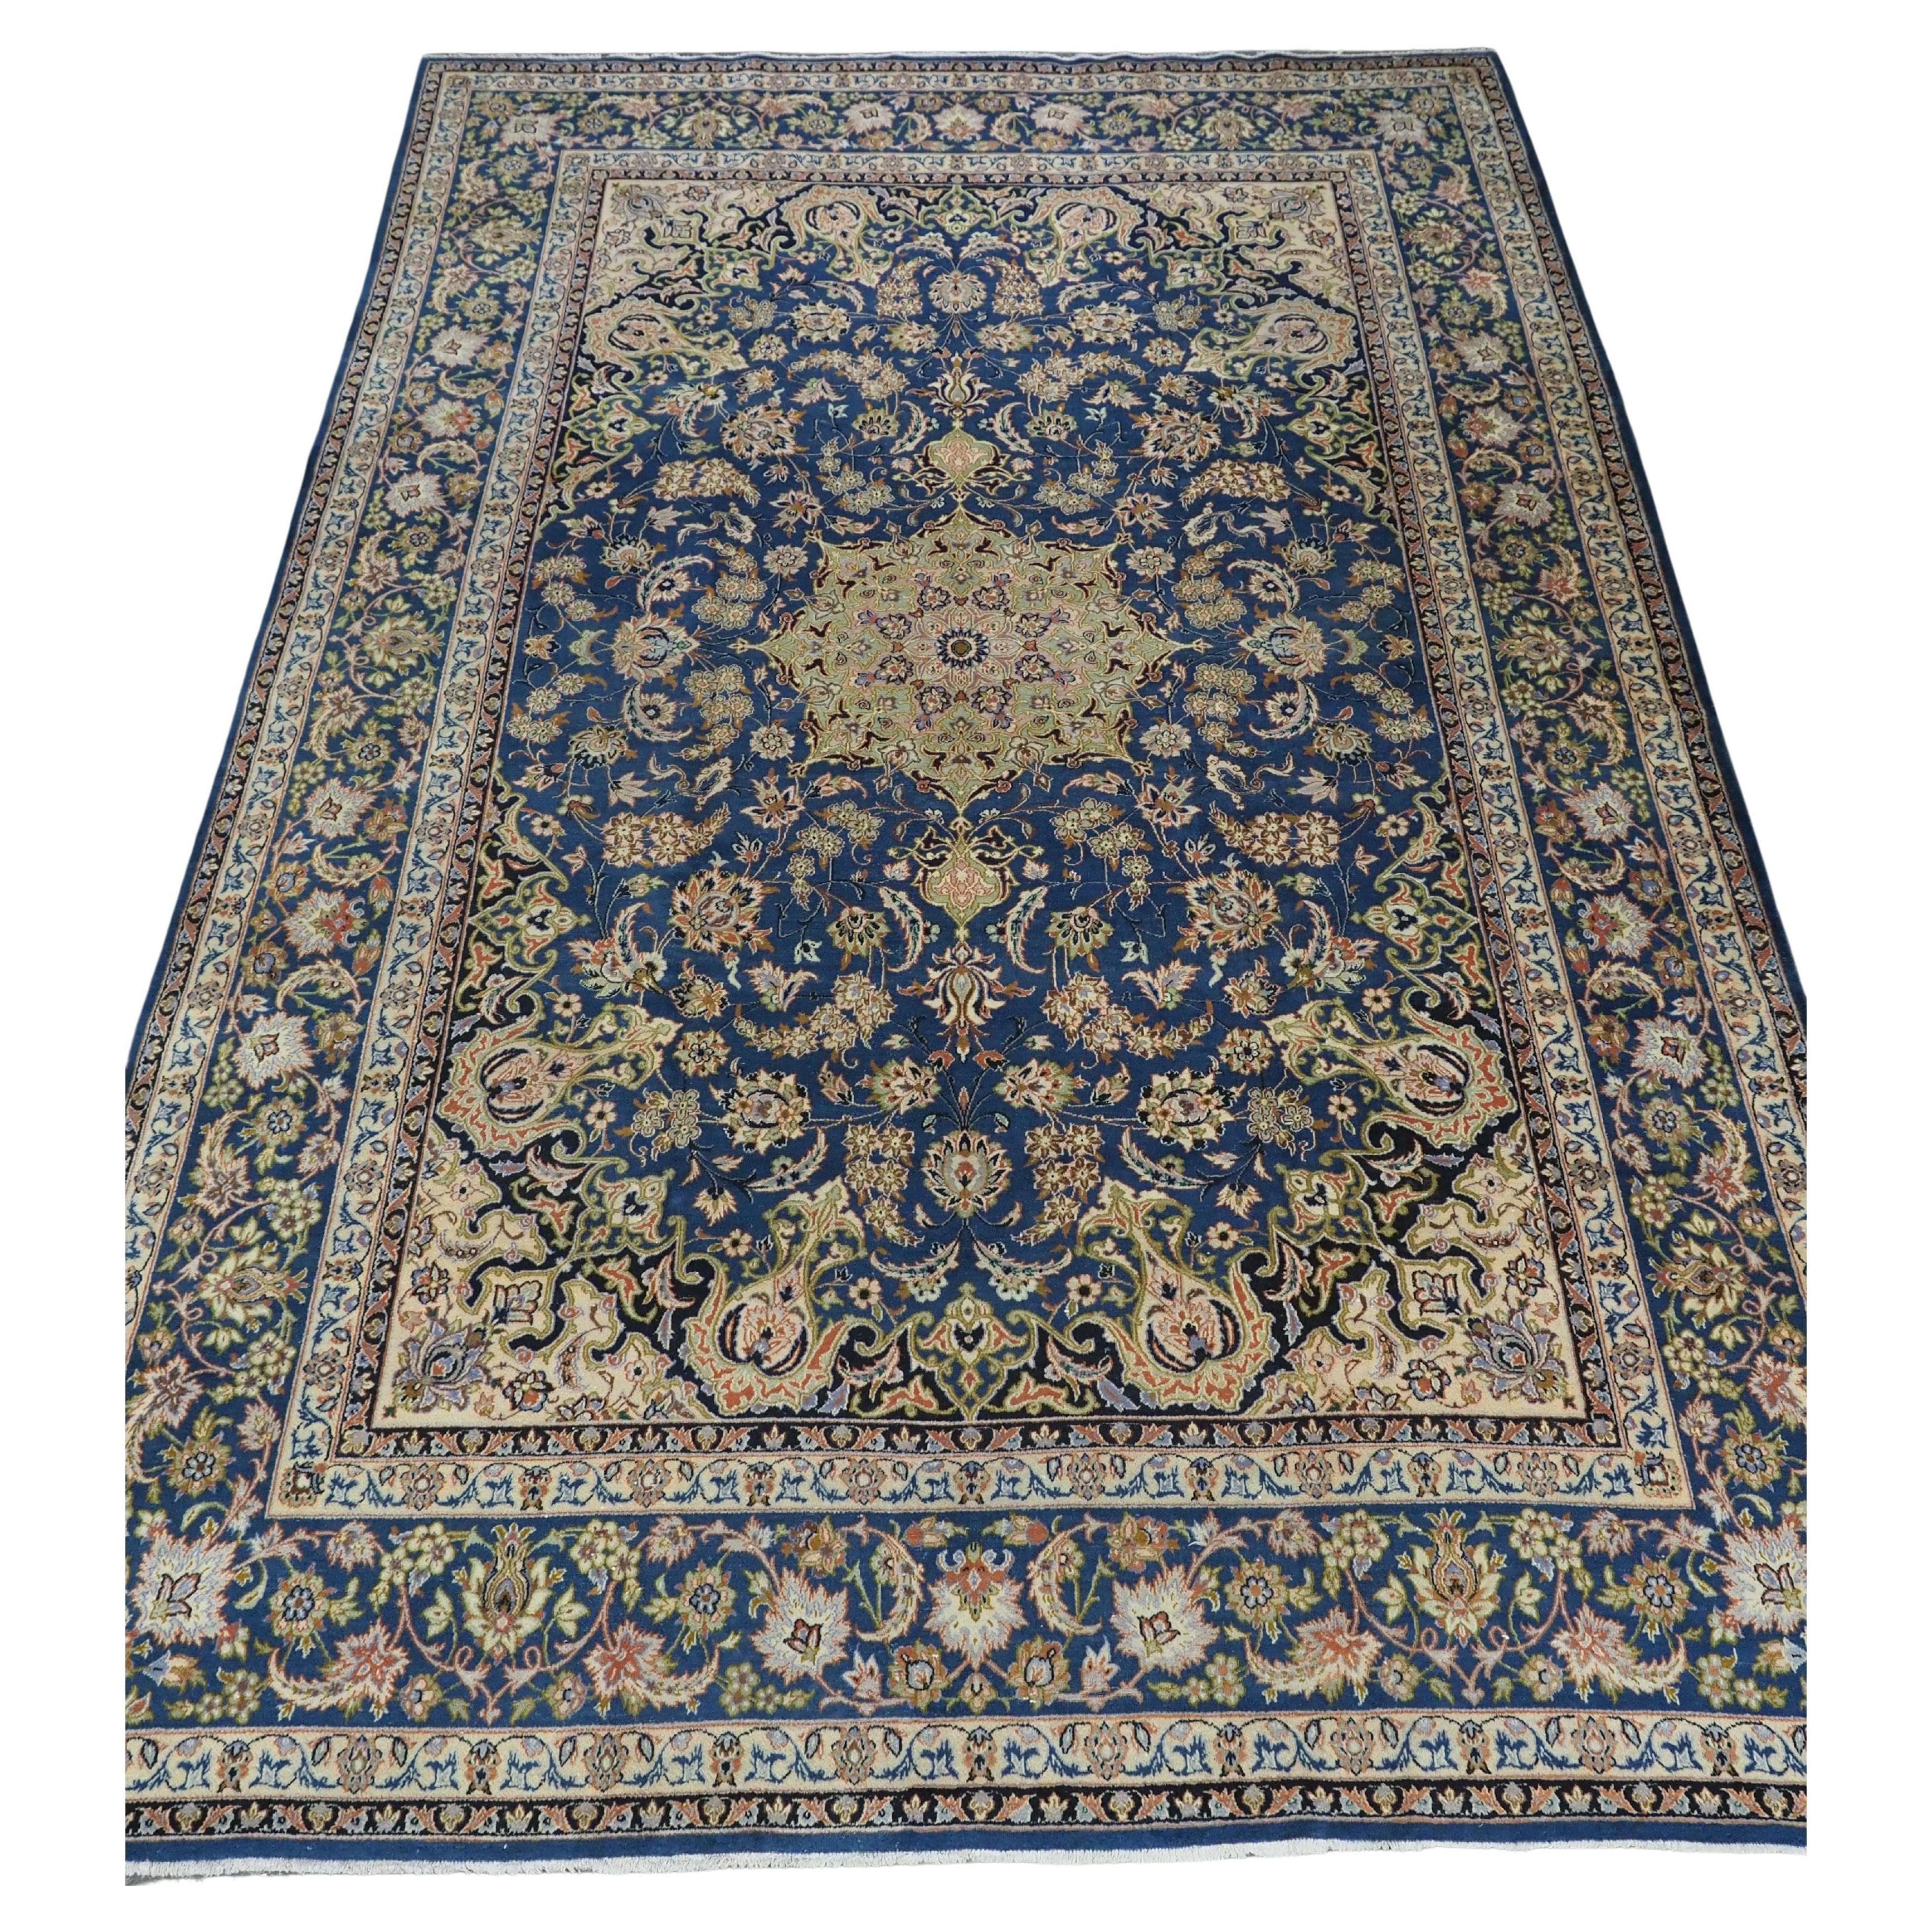 Vintage  Kashan carpet of traditional  design in a large room size. For Sale